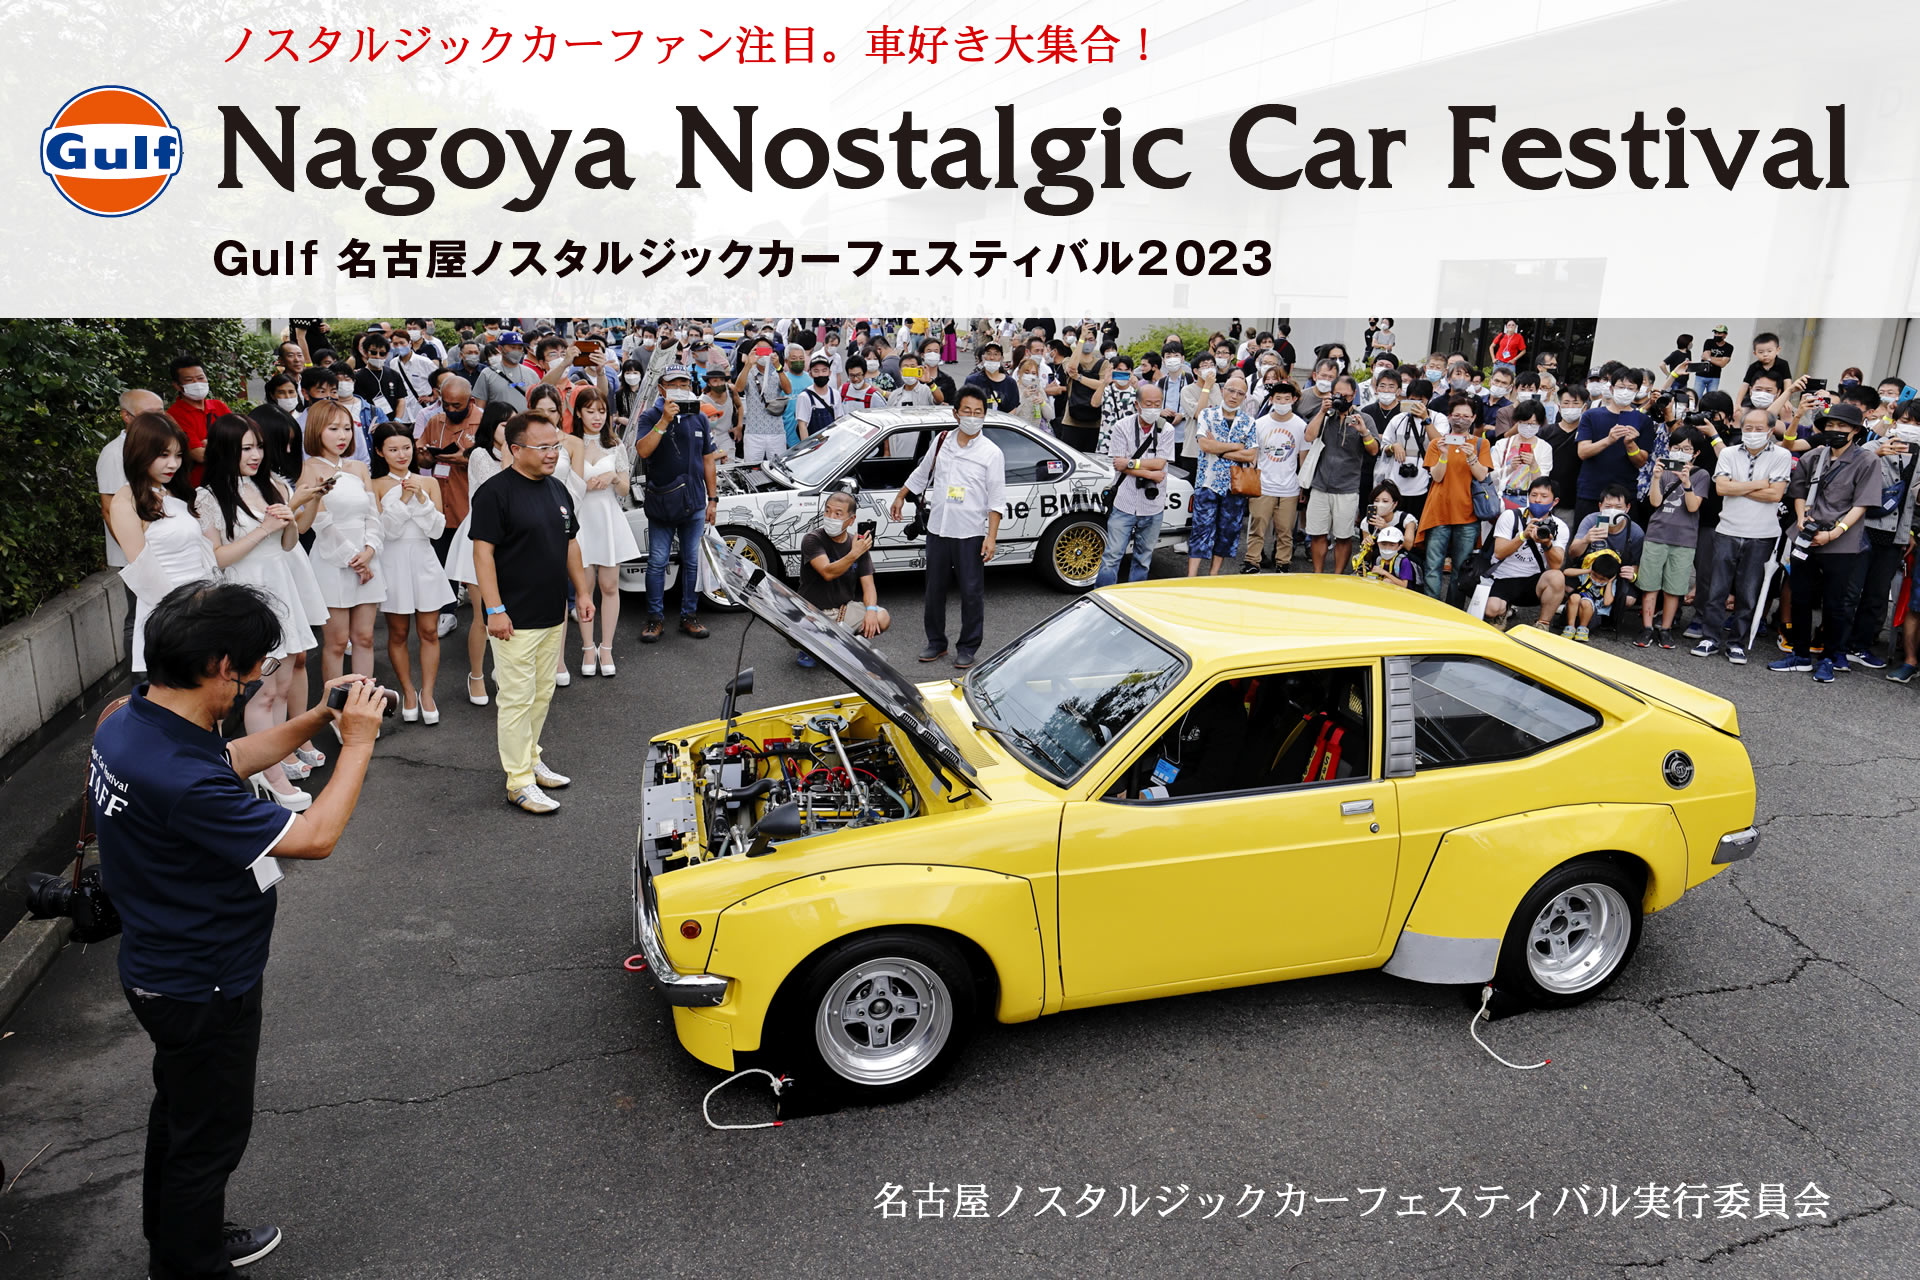 Gulf Nagoya Nostalgic Car Festival